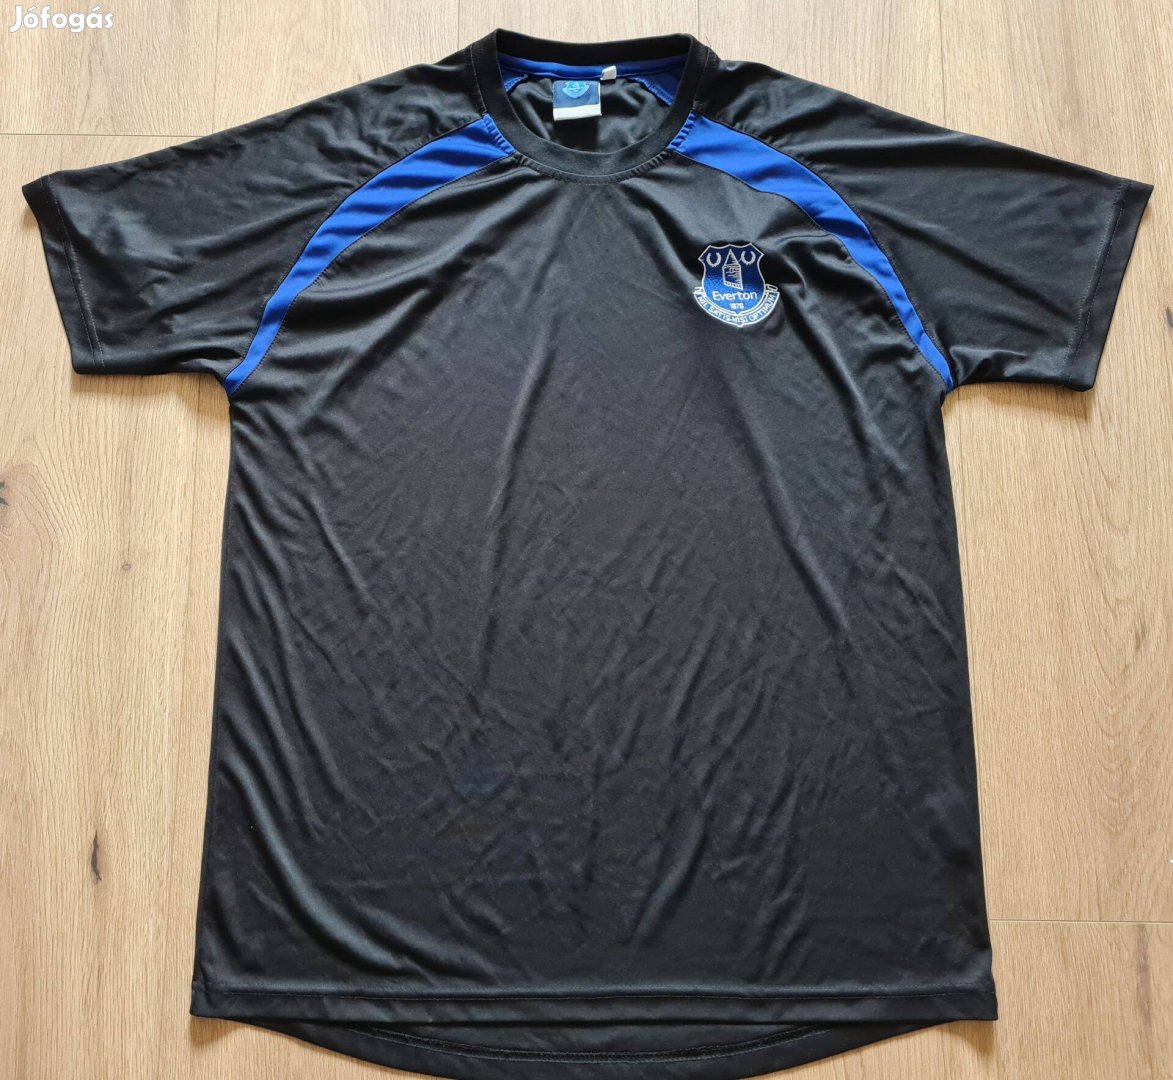 Everton fekete kék rövidujjú férfi focimez XL